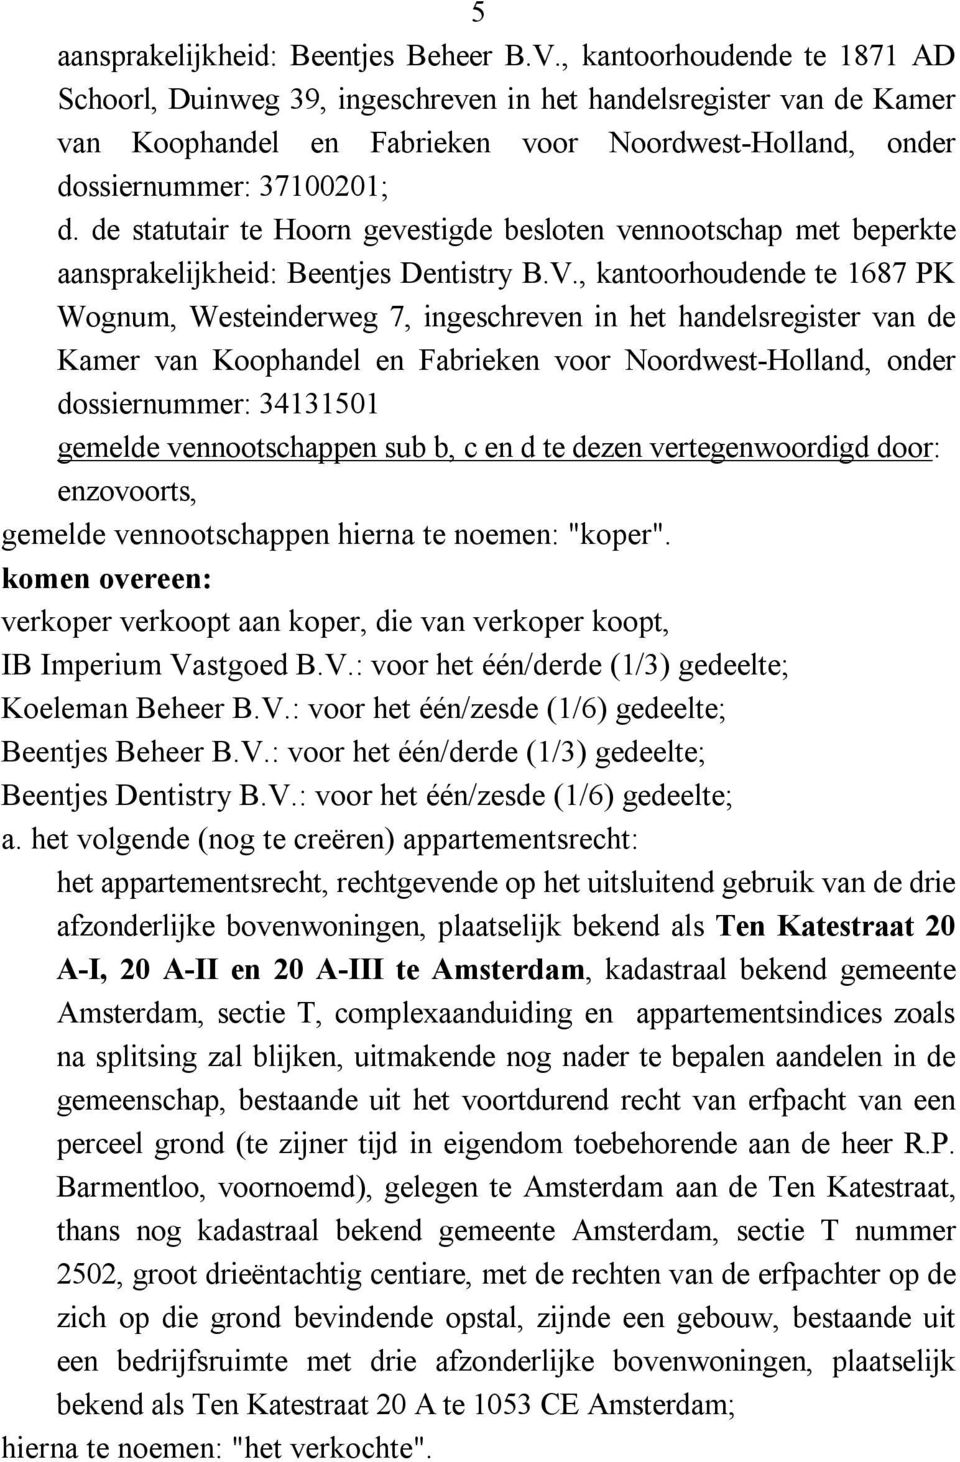 de statutair te Hoorn gevestigde besloten vennootschap met beperkte aansprakelijkheid: Beentjes Dentistry B.V.